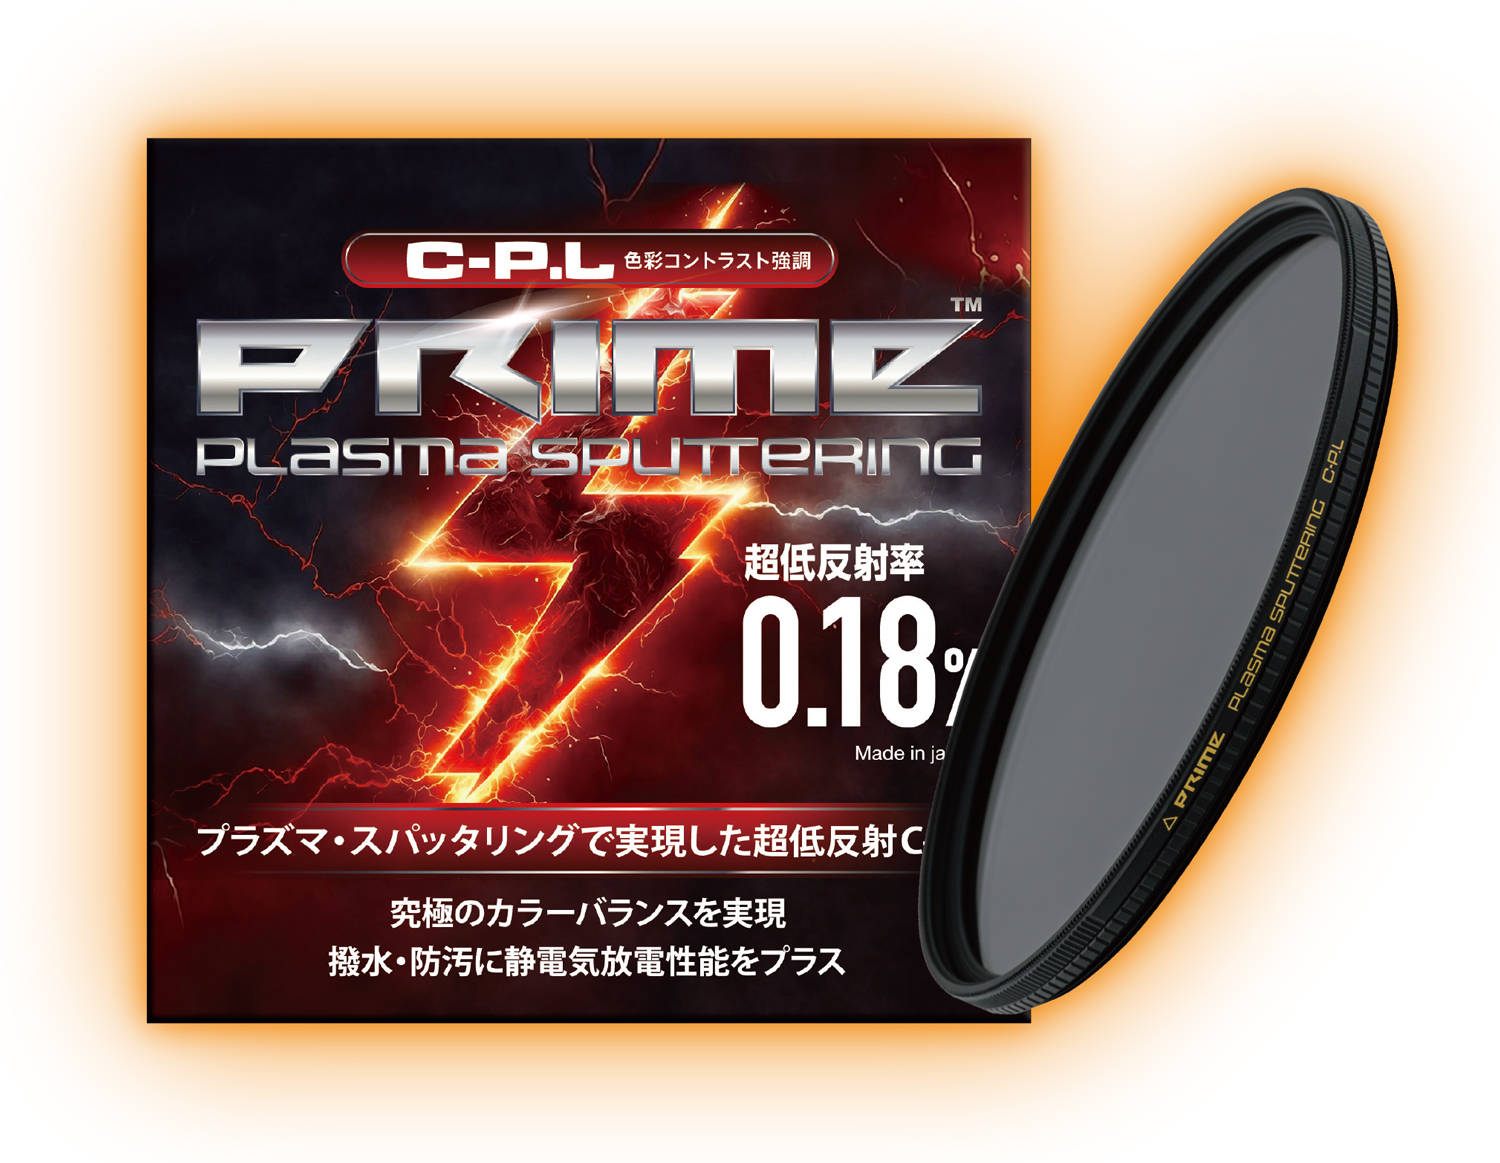 9月15日(金)　PRIME PLASMA SPUTTERING C-P.L 発売開始。<br>プラズマ・スパッタリングで実現した、時代を変える圧倒的ハイスペック!   ここに最強のゲームチェンジャー現る。